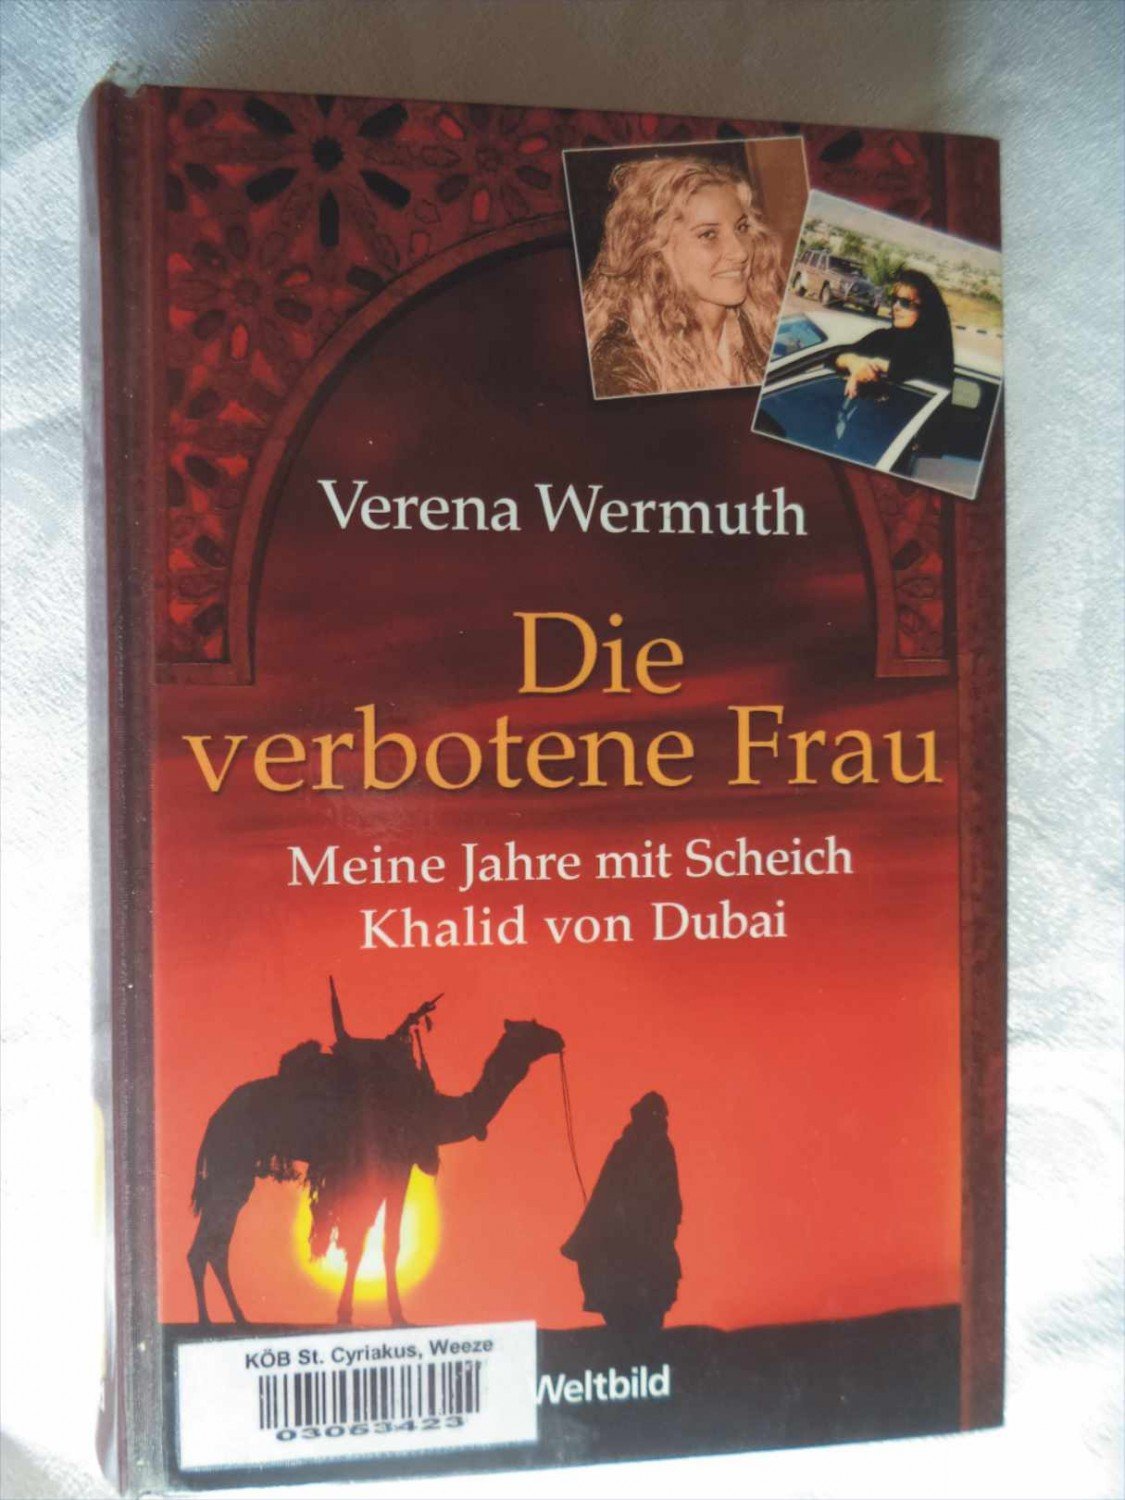 Die Verbotene Frau Meine Jahre Mit Scheich Khalid Von Verena Wermuth Buch Gebraucht Kaufen A01y3aac01zz1